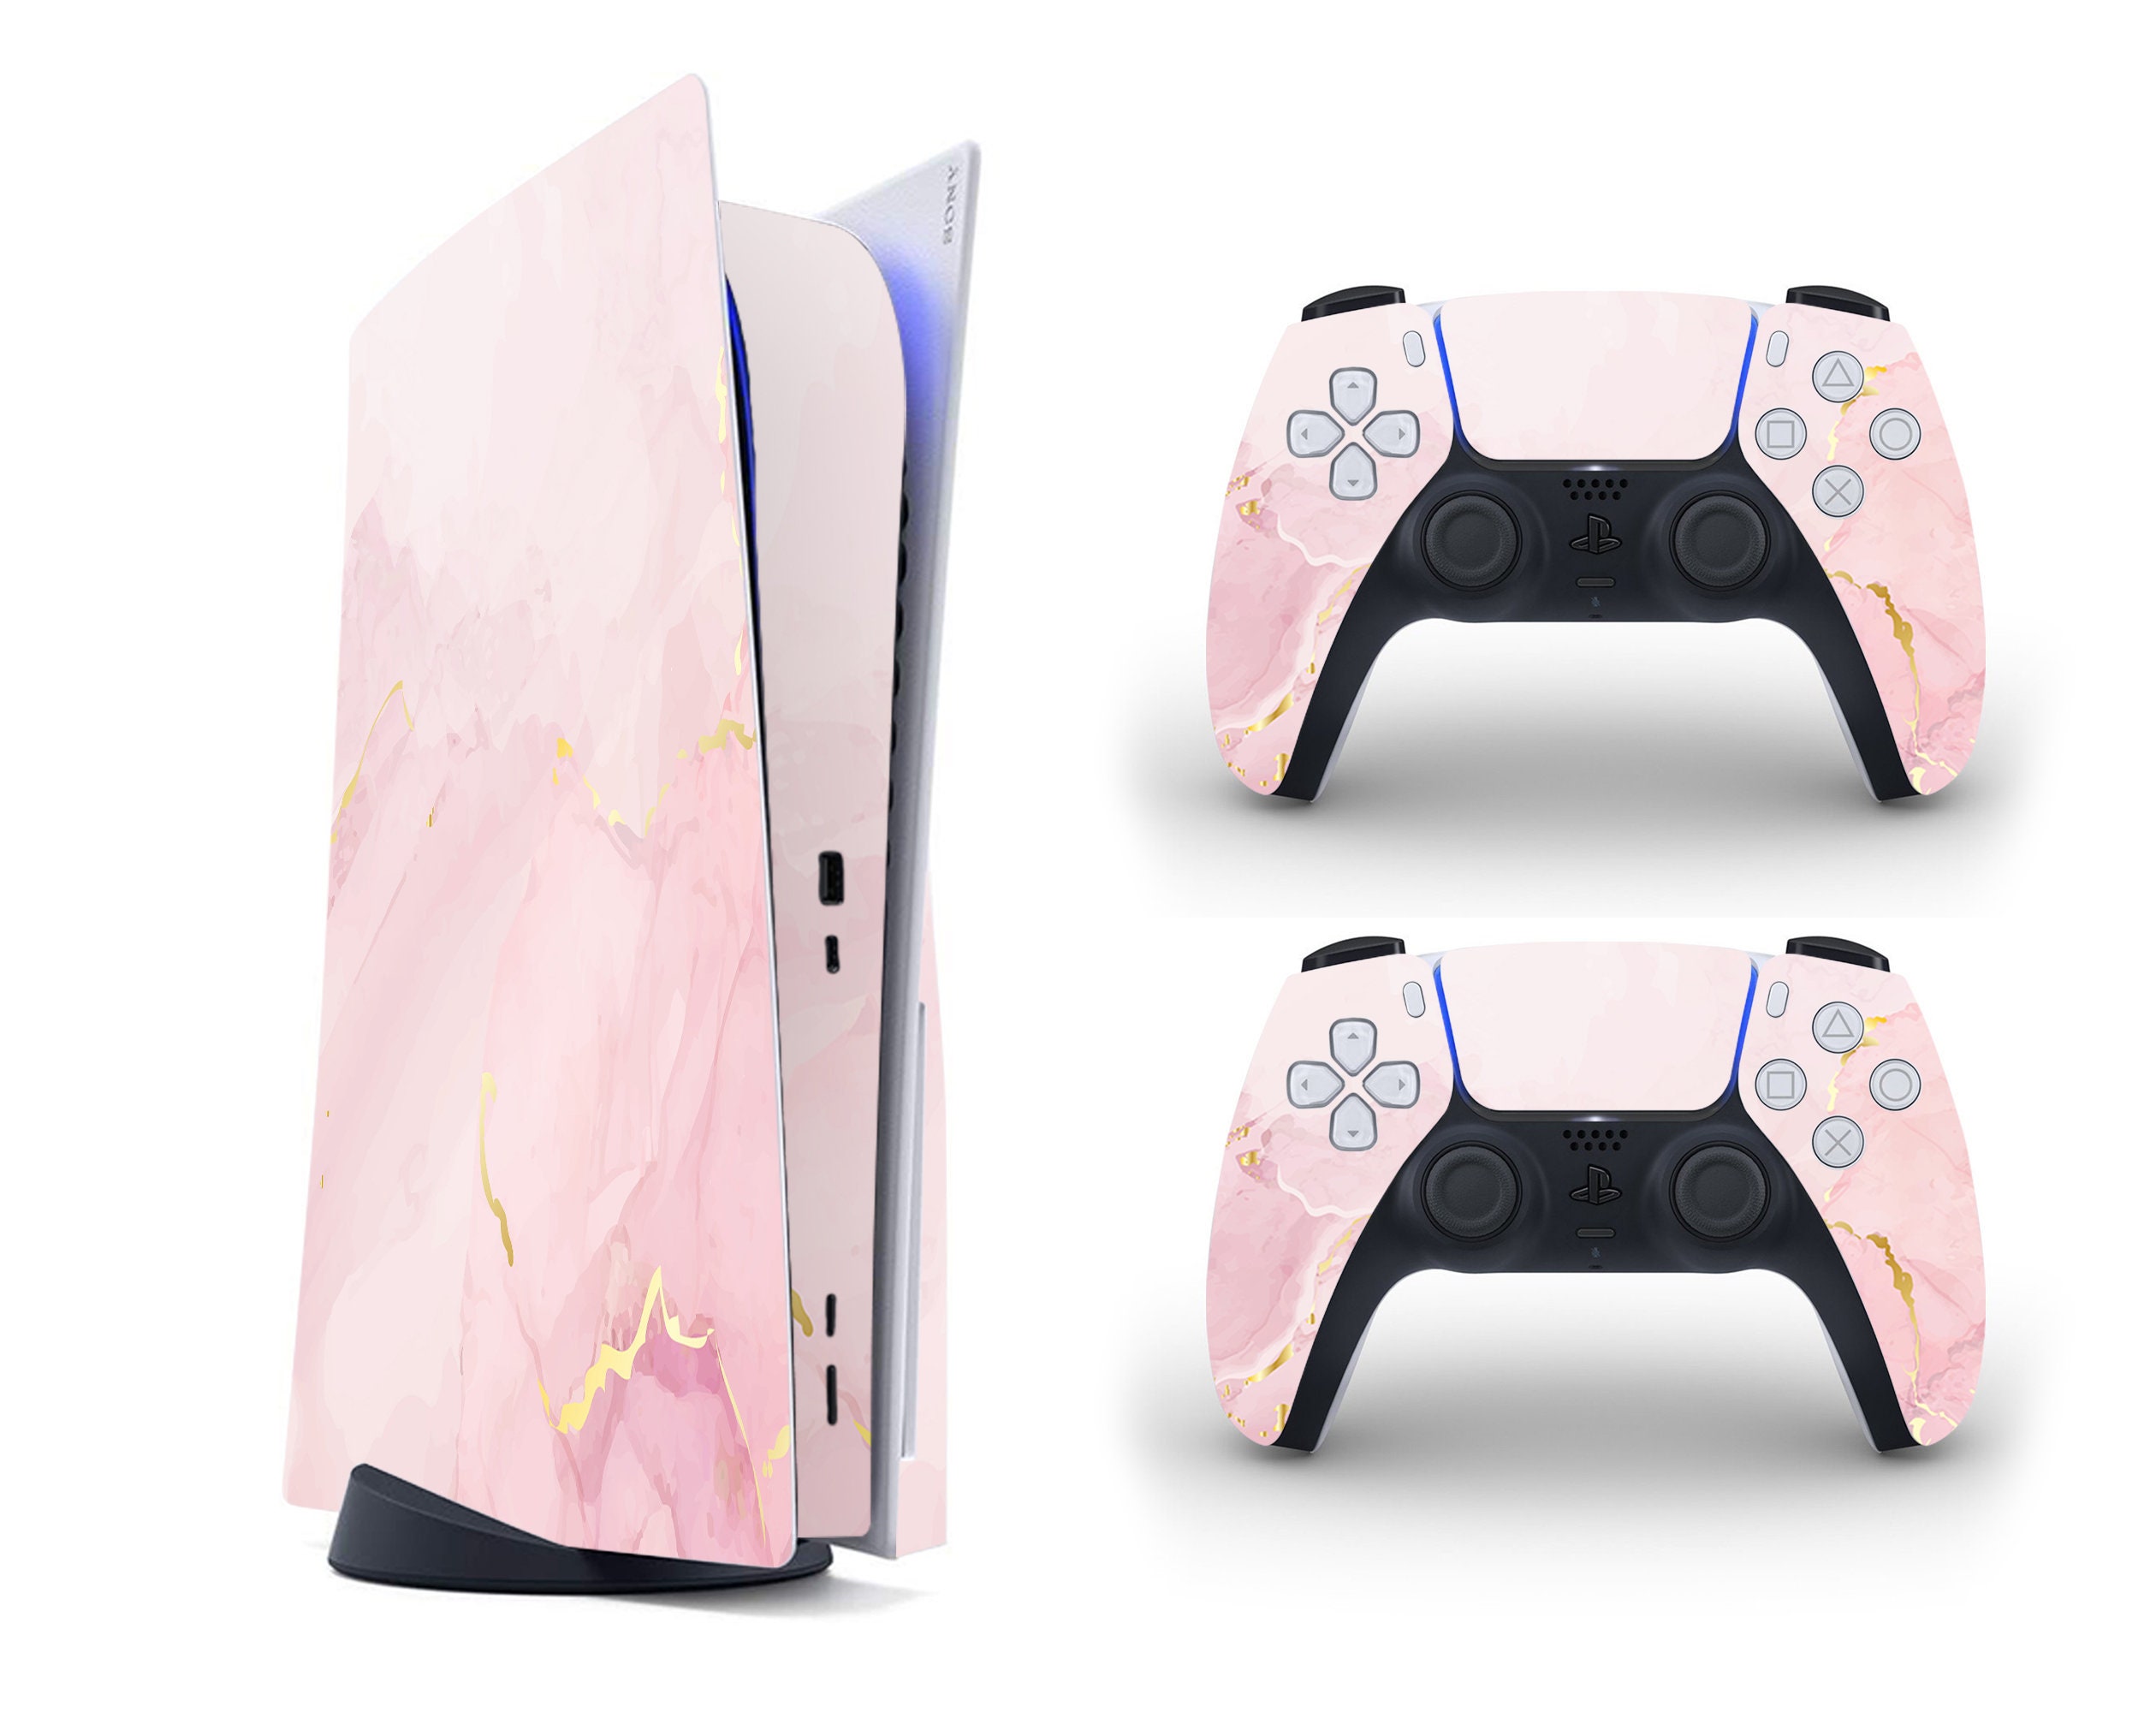 Incroyable habillage rose marbré pour PS5, motif marbré liquide esthétique,  habillage de manette PlayStation 5 Dualsense, décalcomanie personnalisée  pour console PS5, vinyle 3M -  France